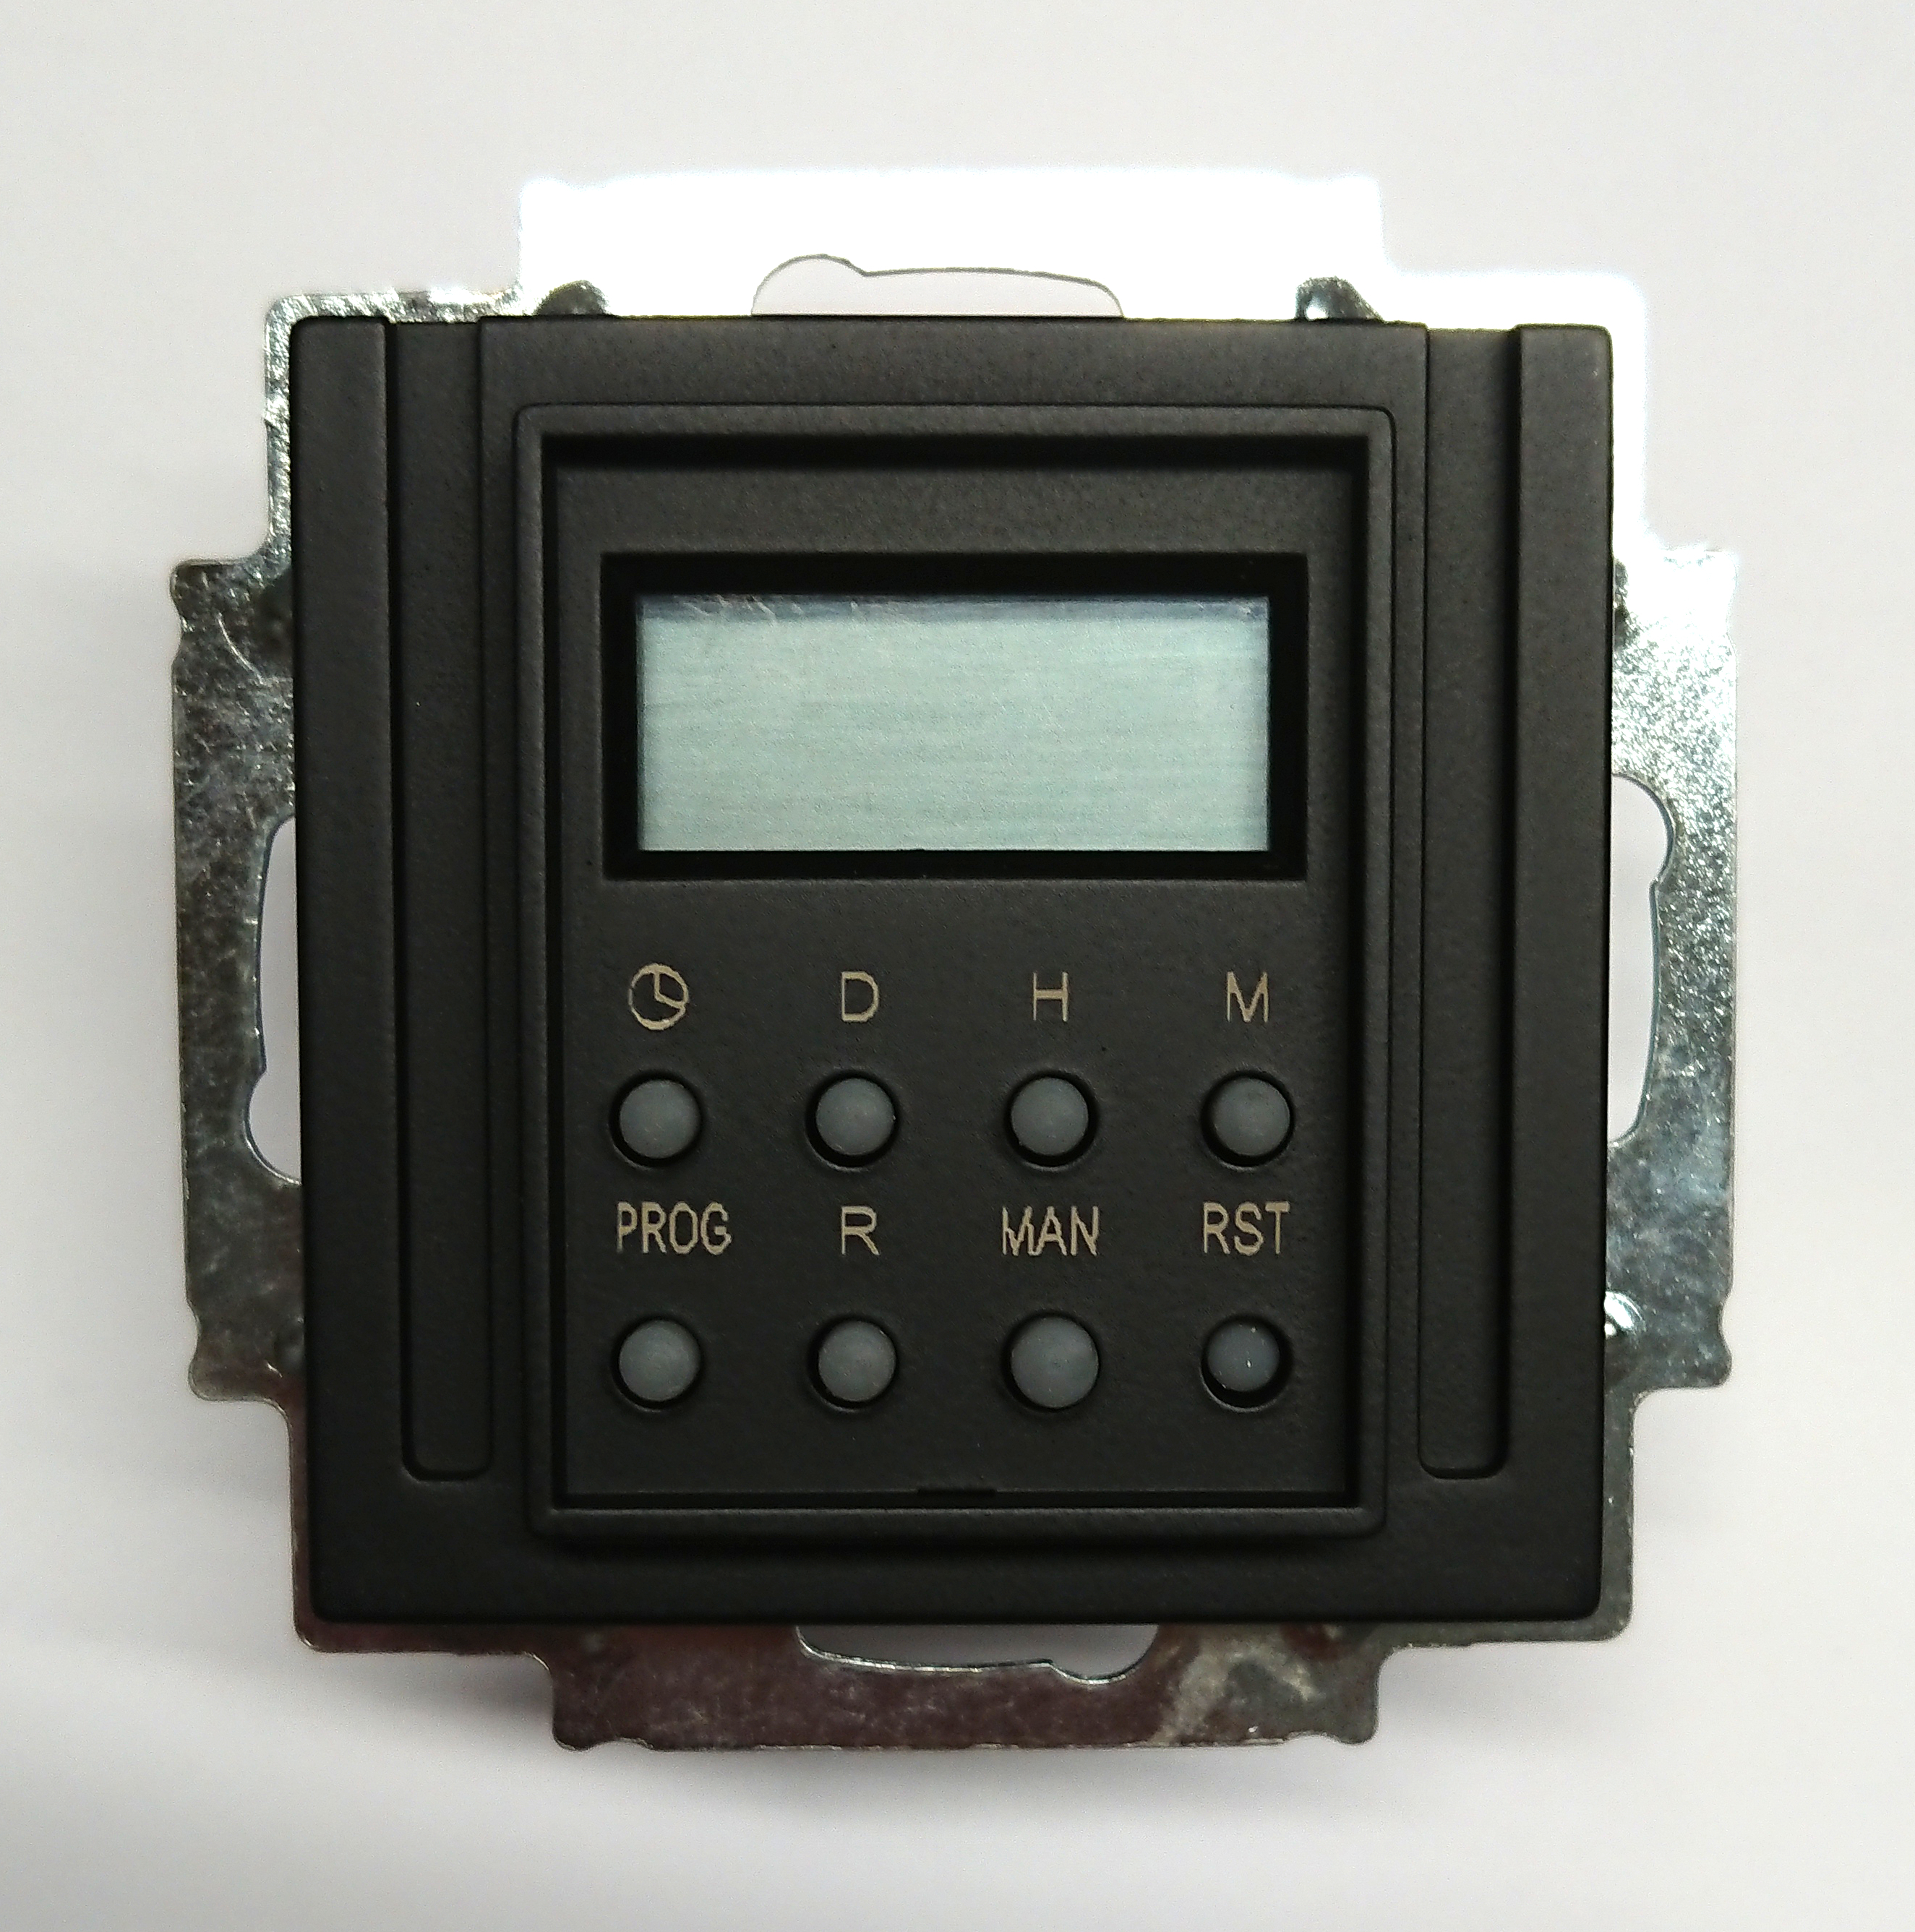 Unterputz Wochen-Schaltuhr mit LCD Display schwarz matt RAL 9005 K55